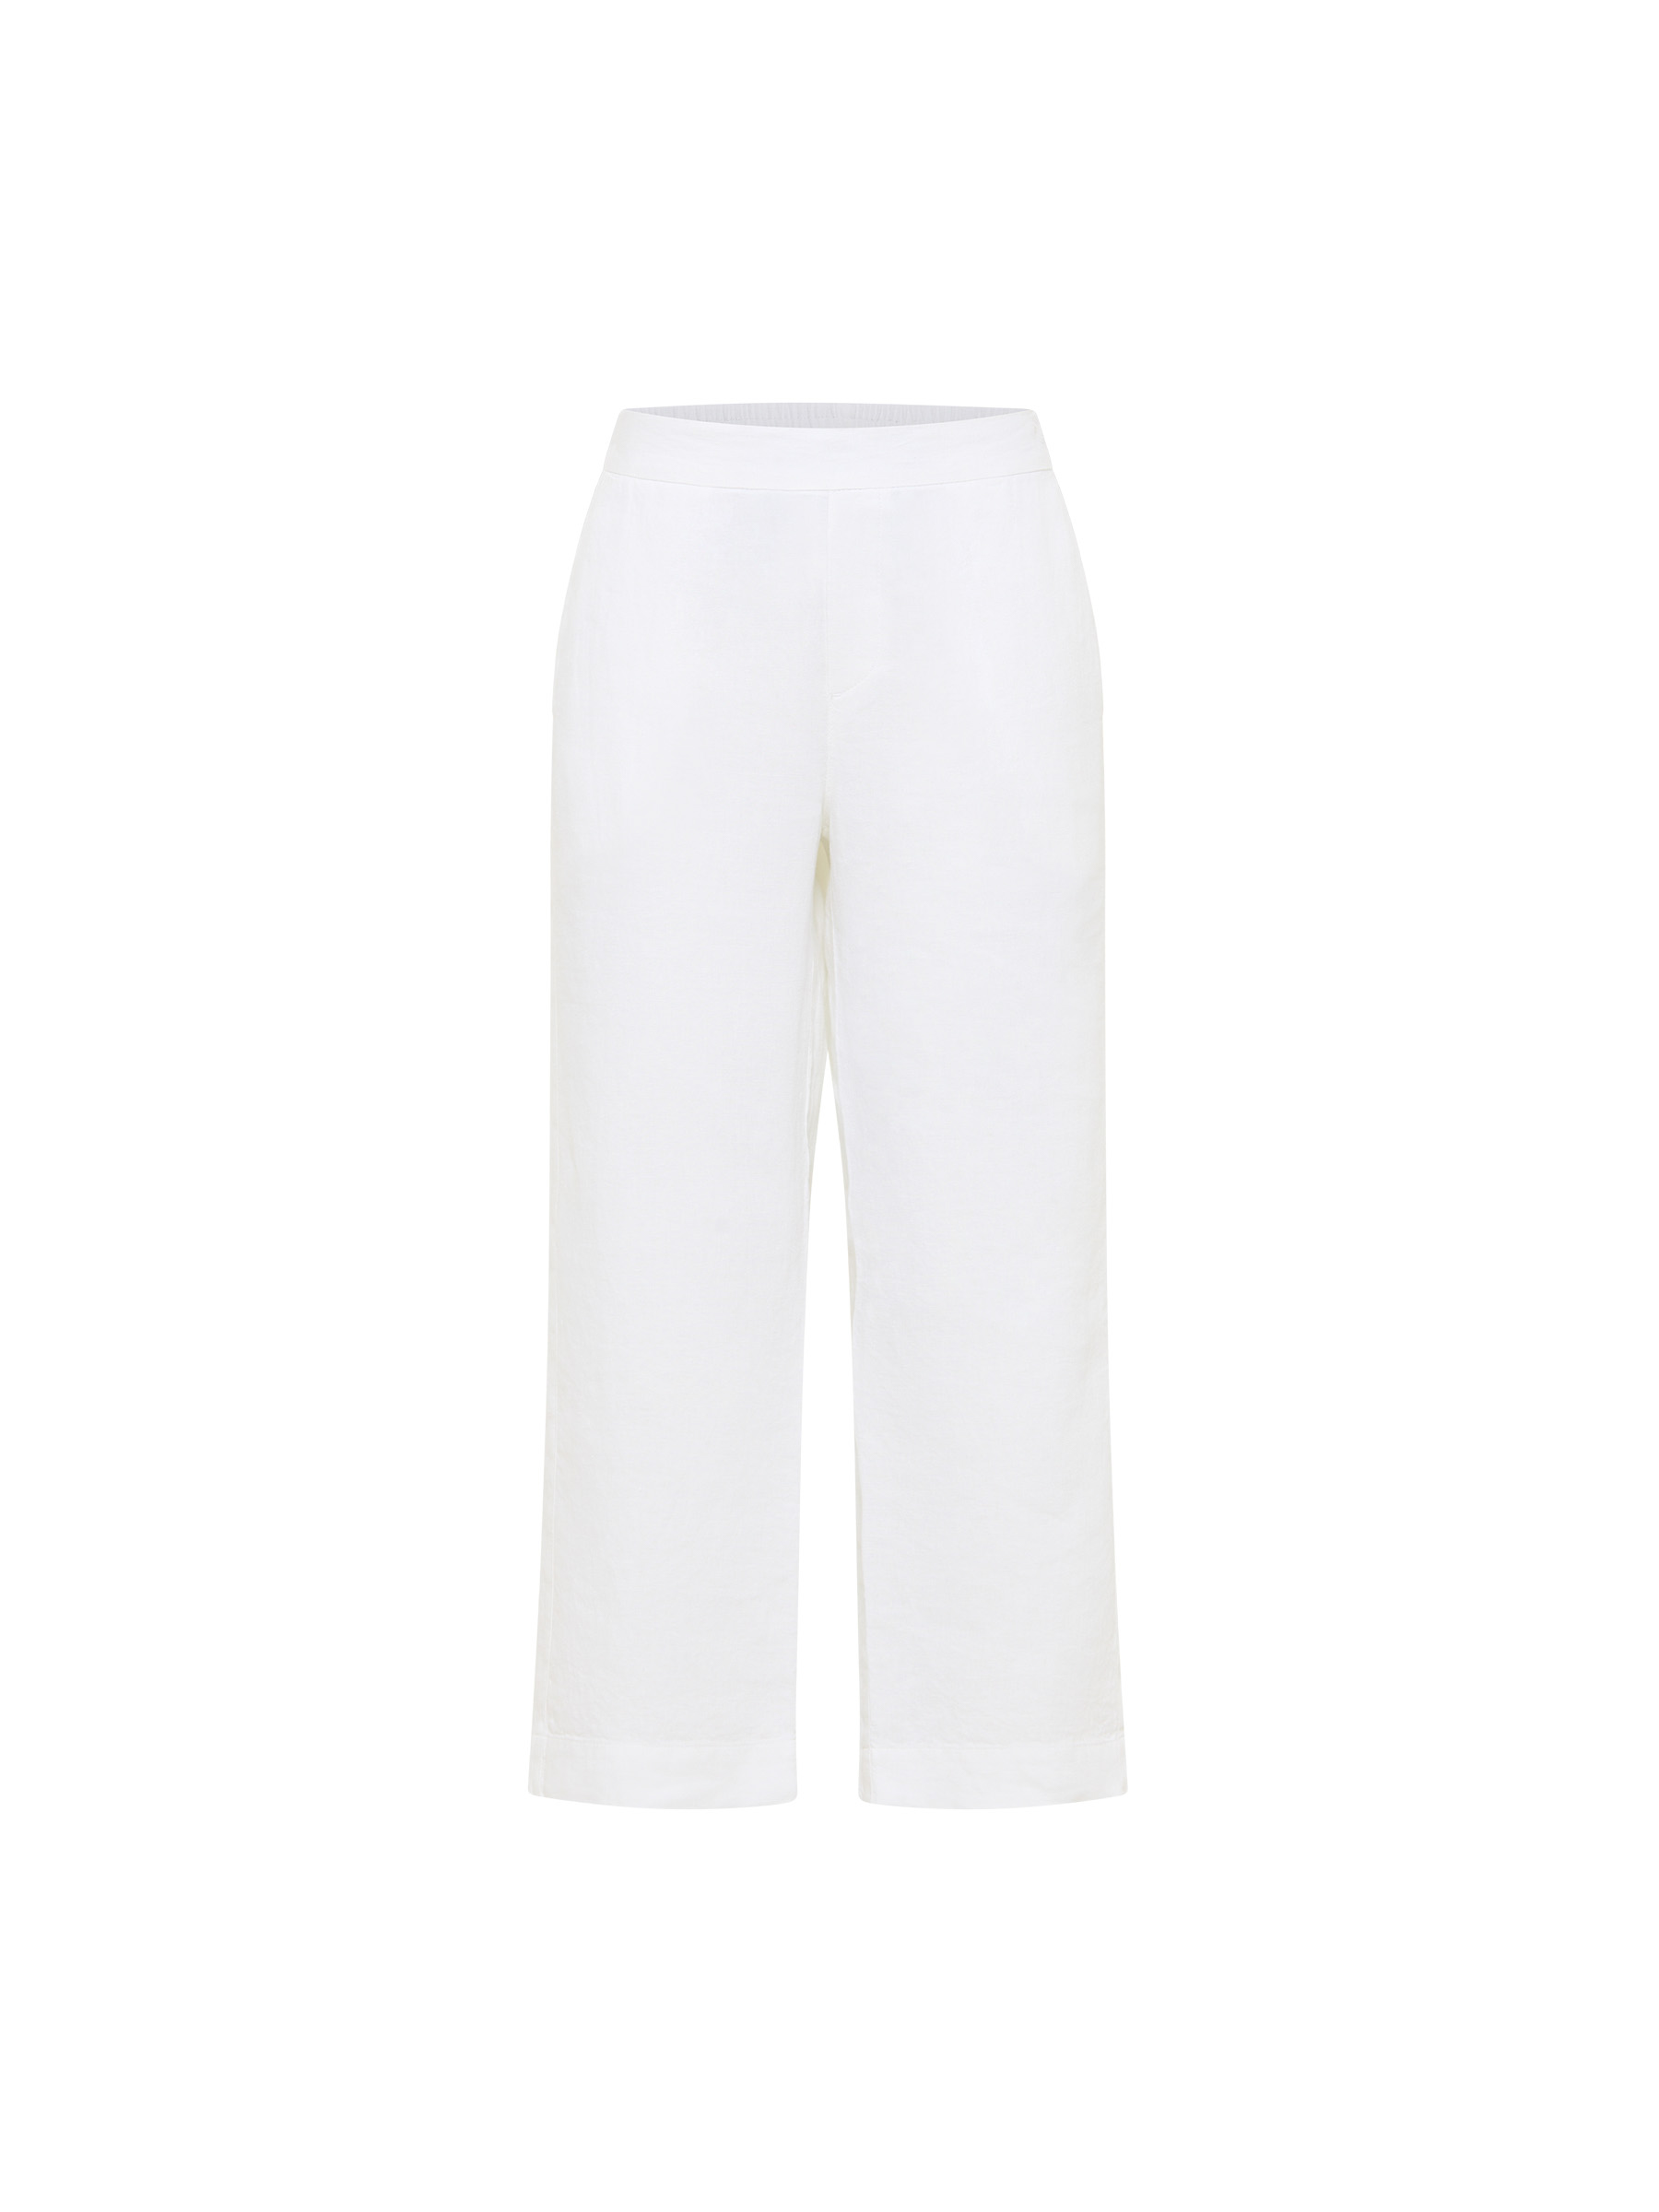 Pantalon Xena - blanc - lin -LANIUS 01